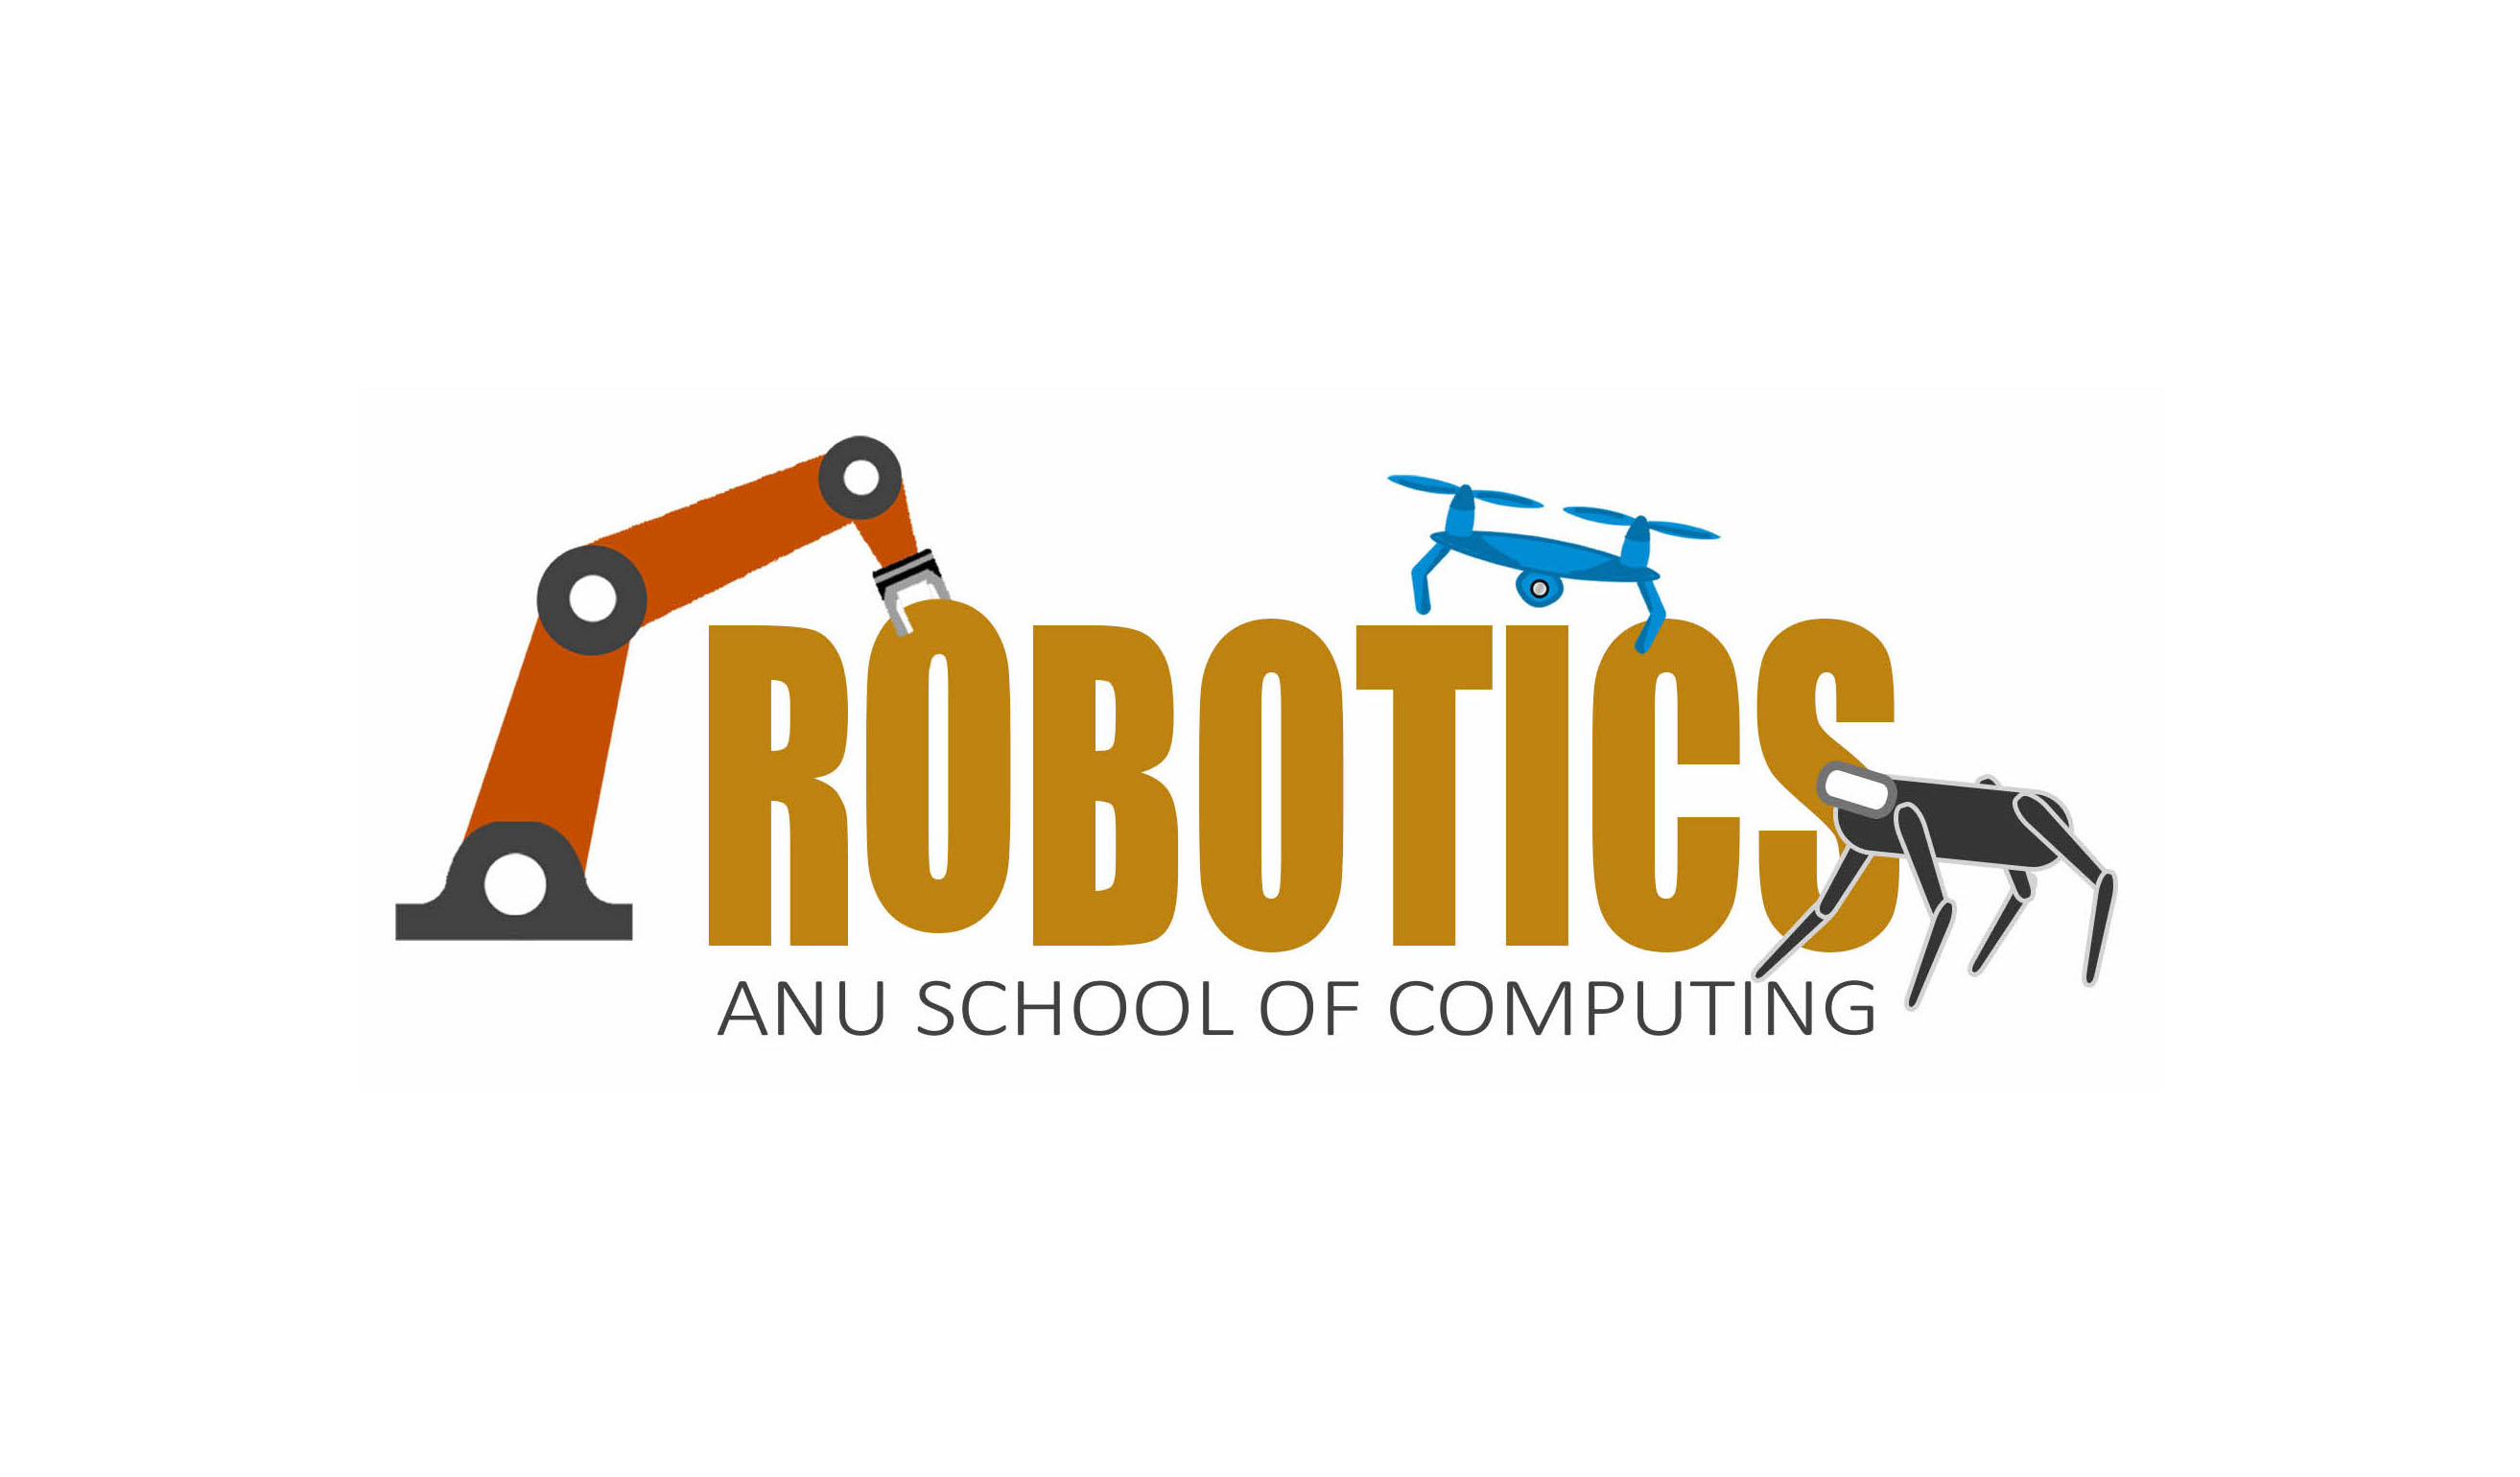 ANU Robotics Group
